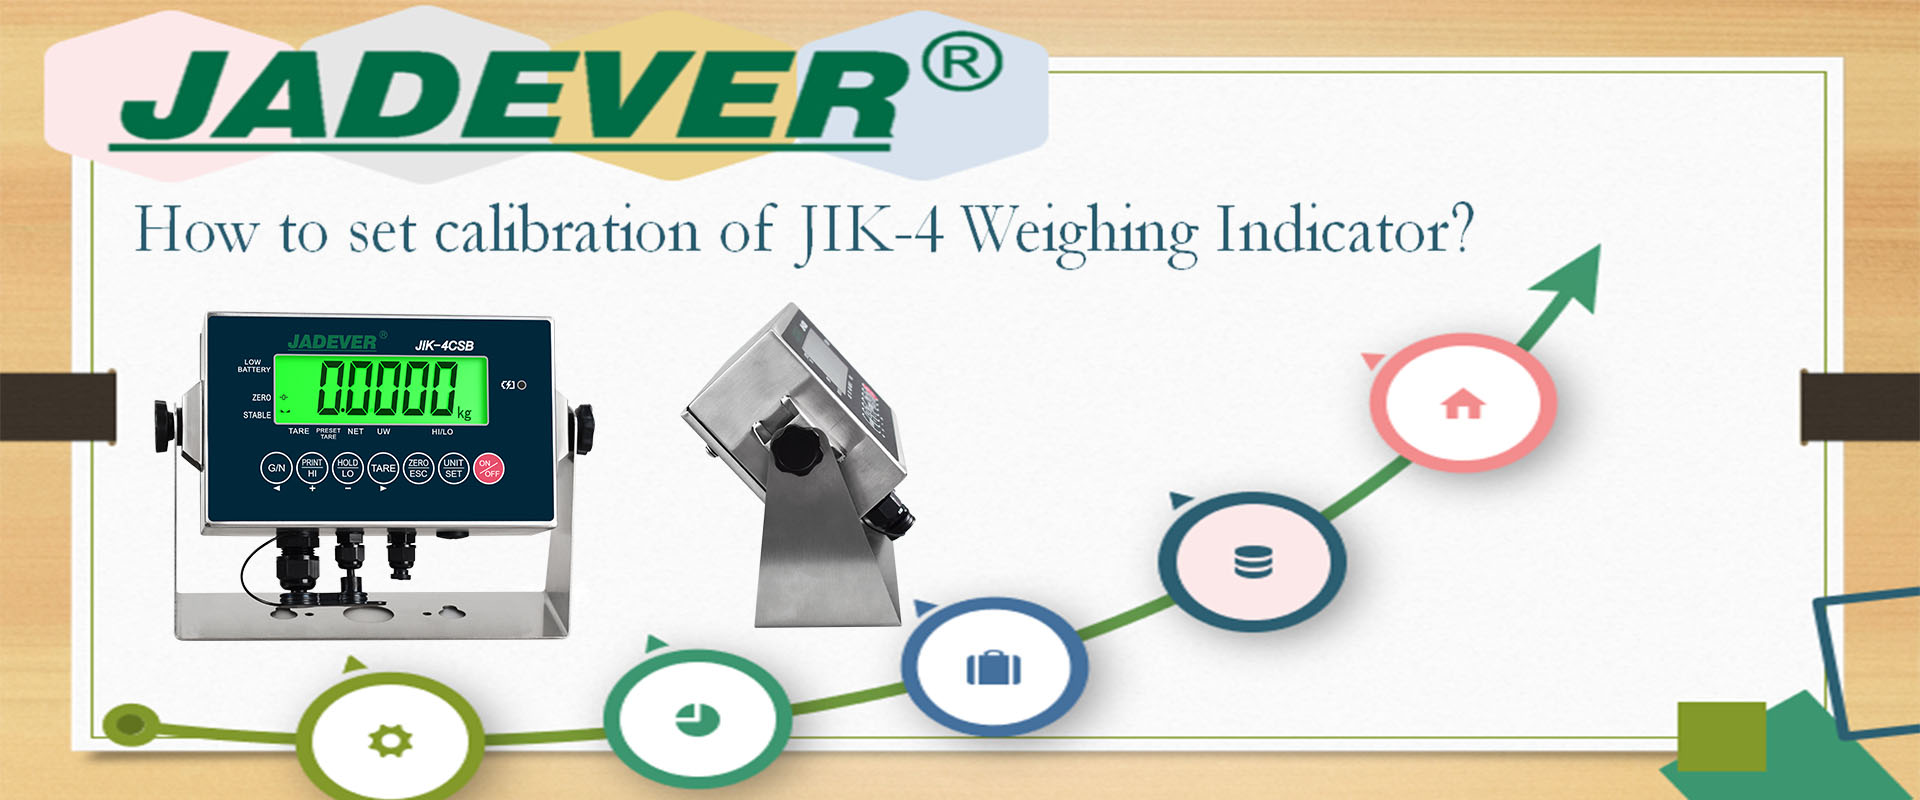 كيفية ضبط معايرة مؤشر الوزن JIK-4؟
